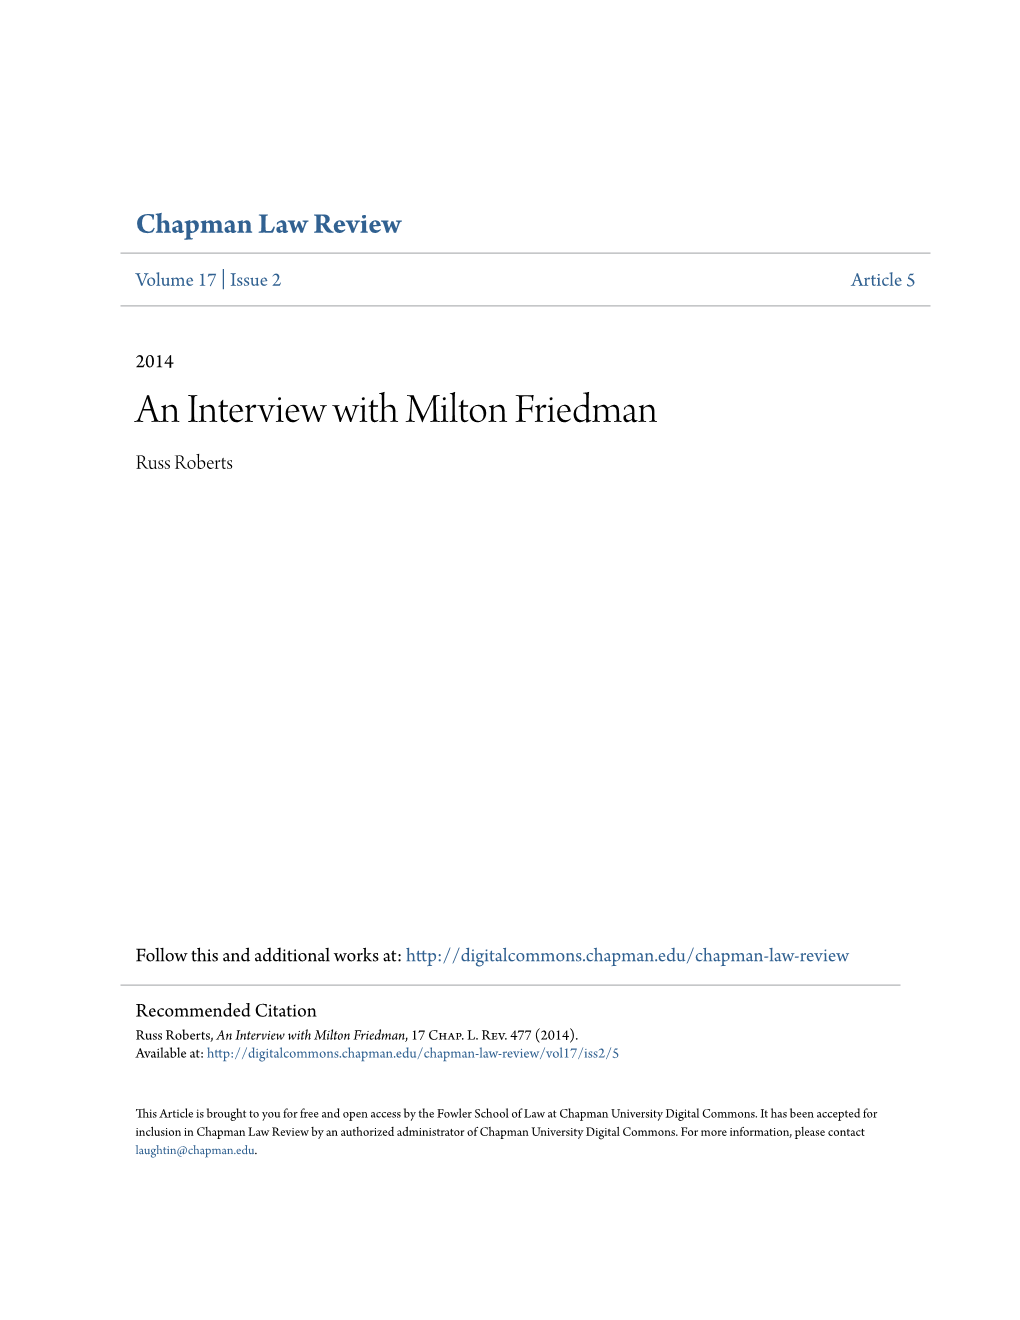 An Interview with Milton Friedman Russ Roberts